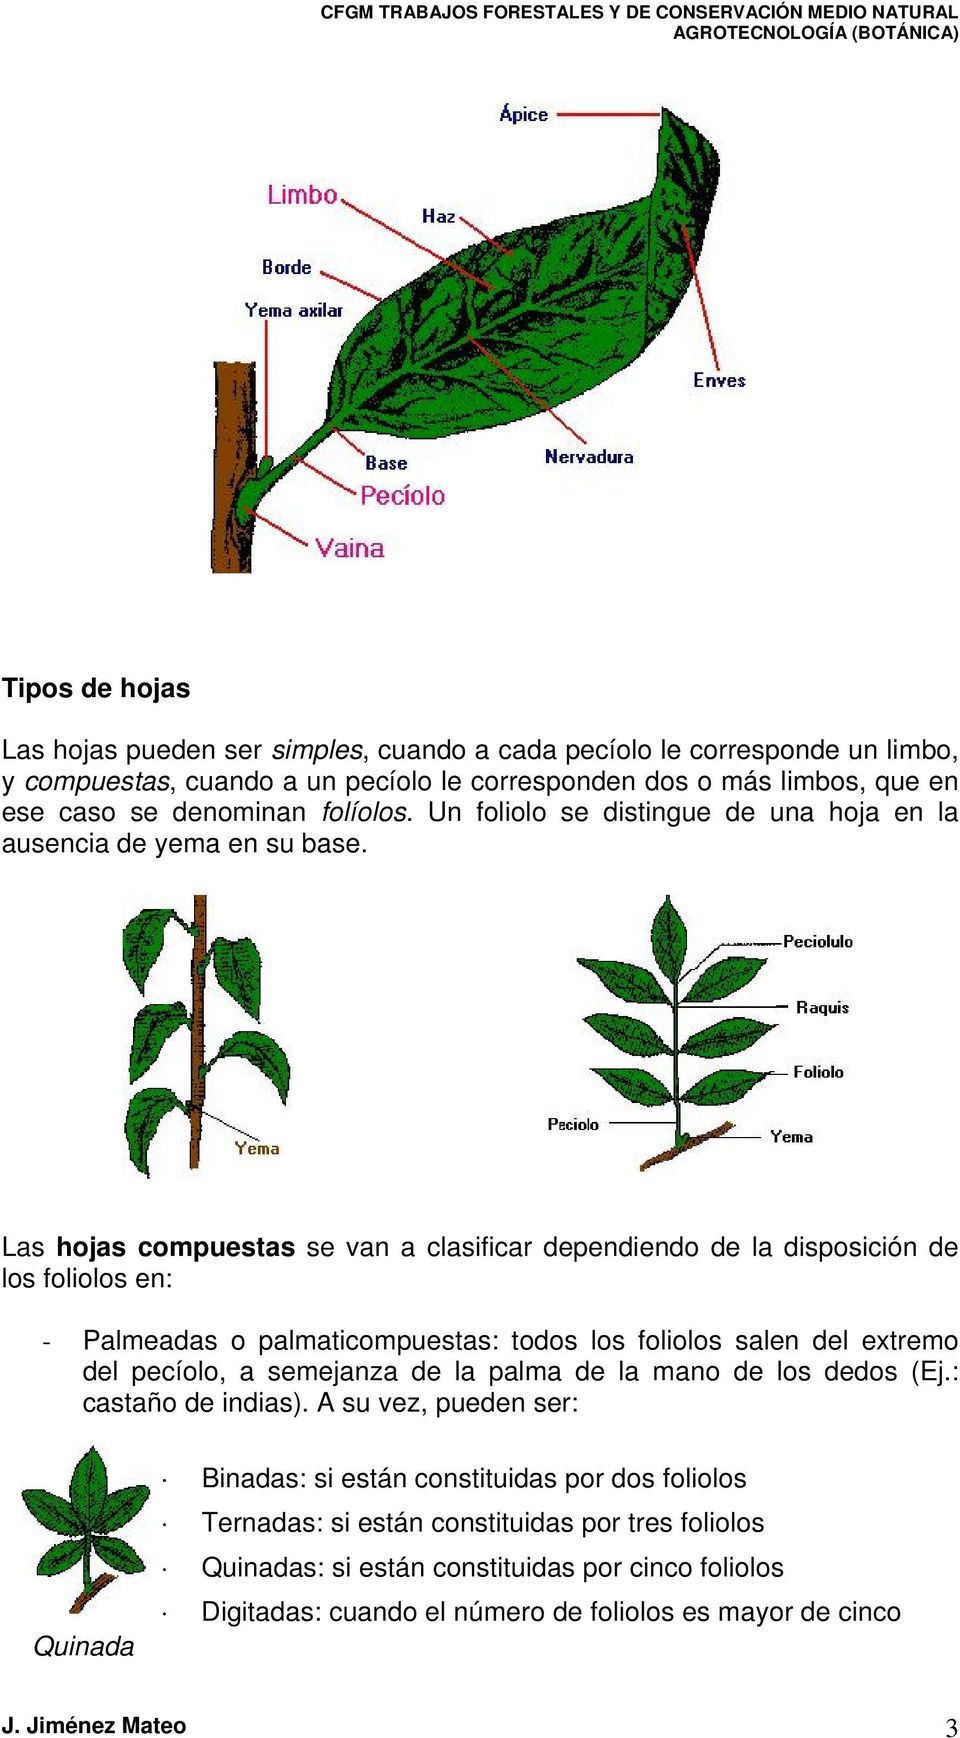 Las hojas compuestas se van a clasificar dependiendo de la disposición de los foliolos en: - Palmeadas o palmaticompuestas: todos los foliolos salen del extremo del pecíolo, a semejanza de la